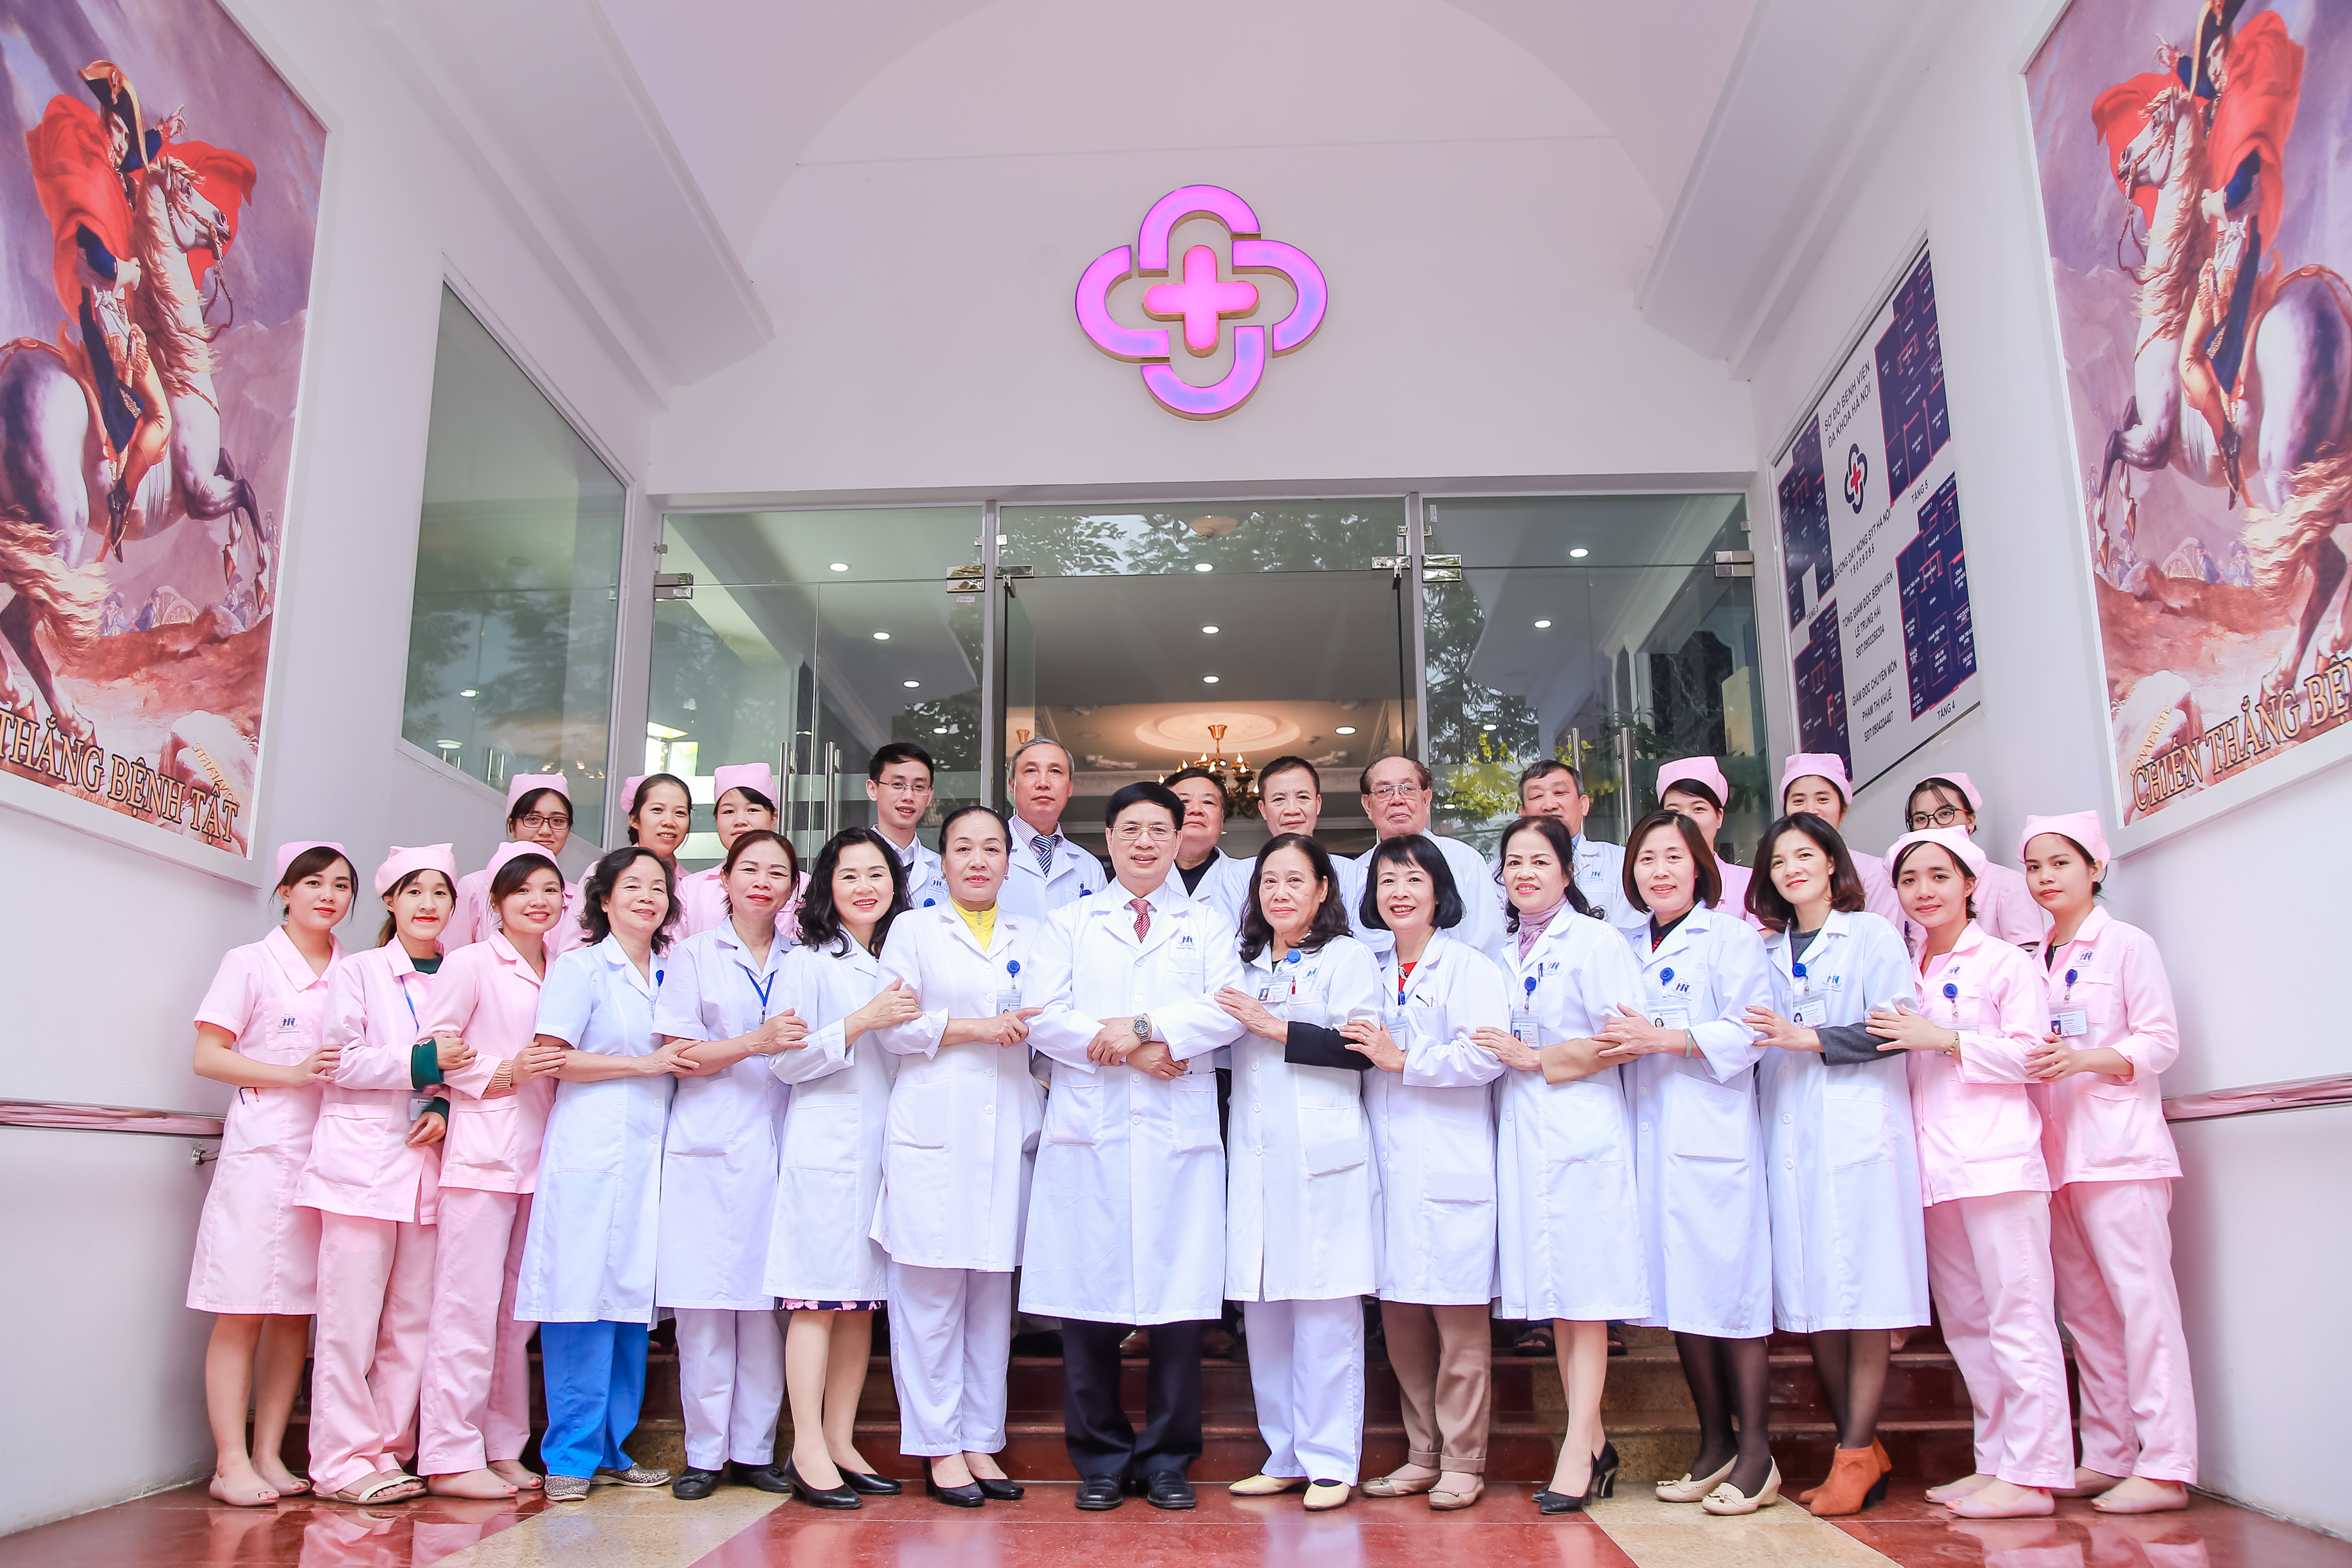 Bệnh viện Đa khoa Hà Nội ra mắt bộ nhận diện thương hiệu mới